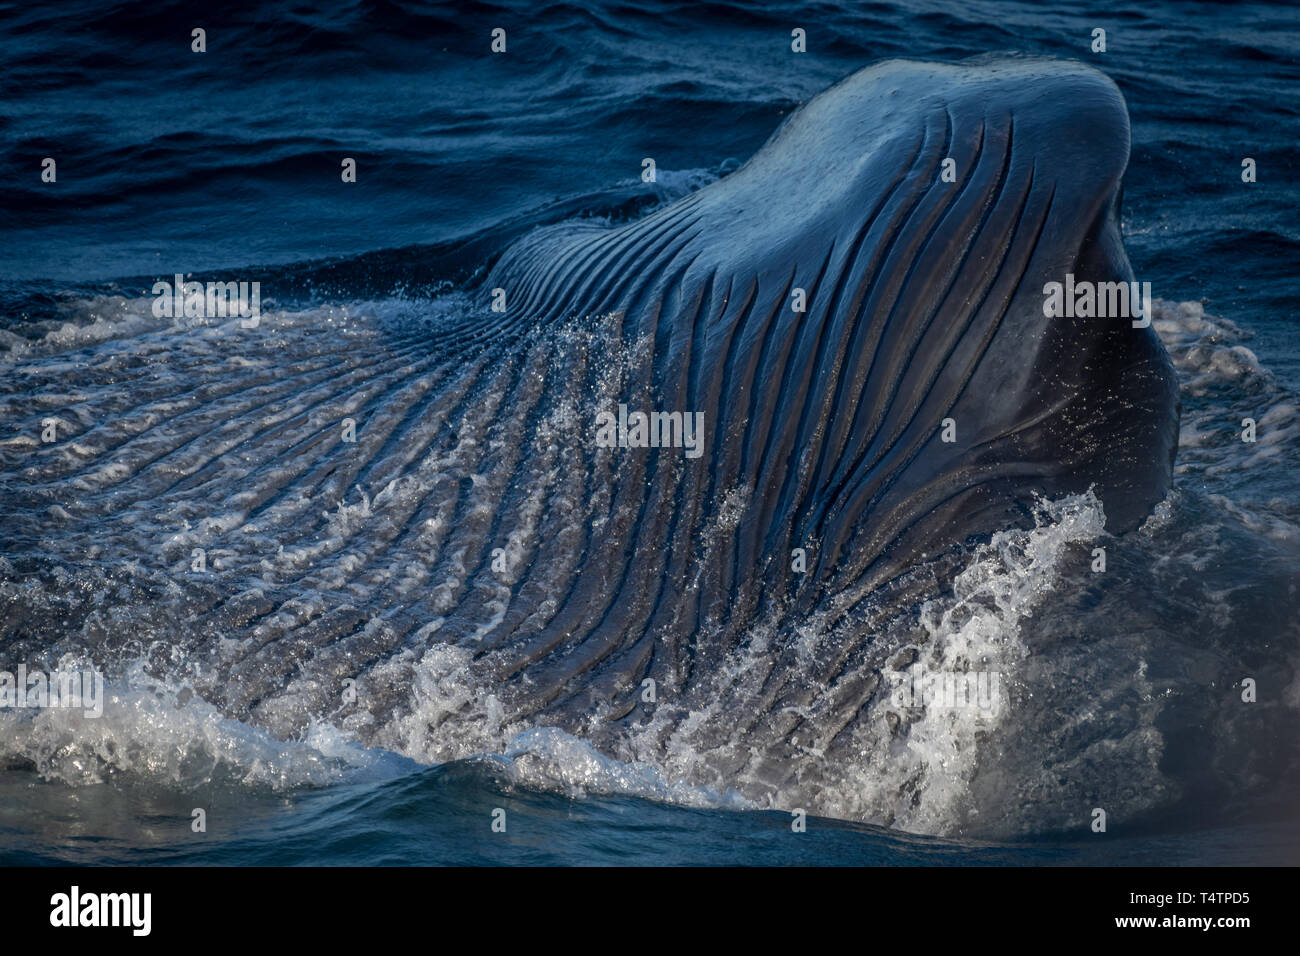 Pliegues ventrales en la parte inferior de la ballena azul (Balaenoptera musculus) son visibles durante el lunge alimentación fuera de la costa de Baja California. Foto de stock